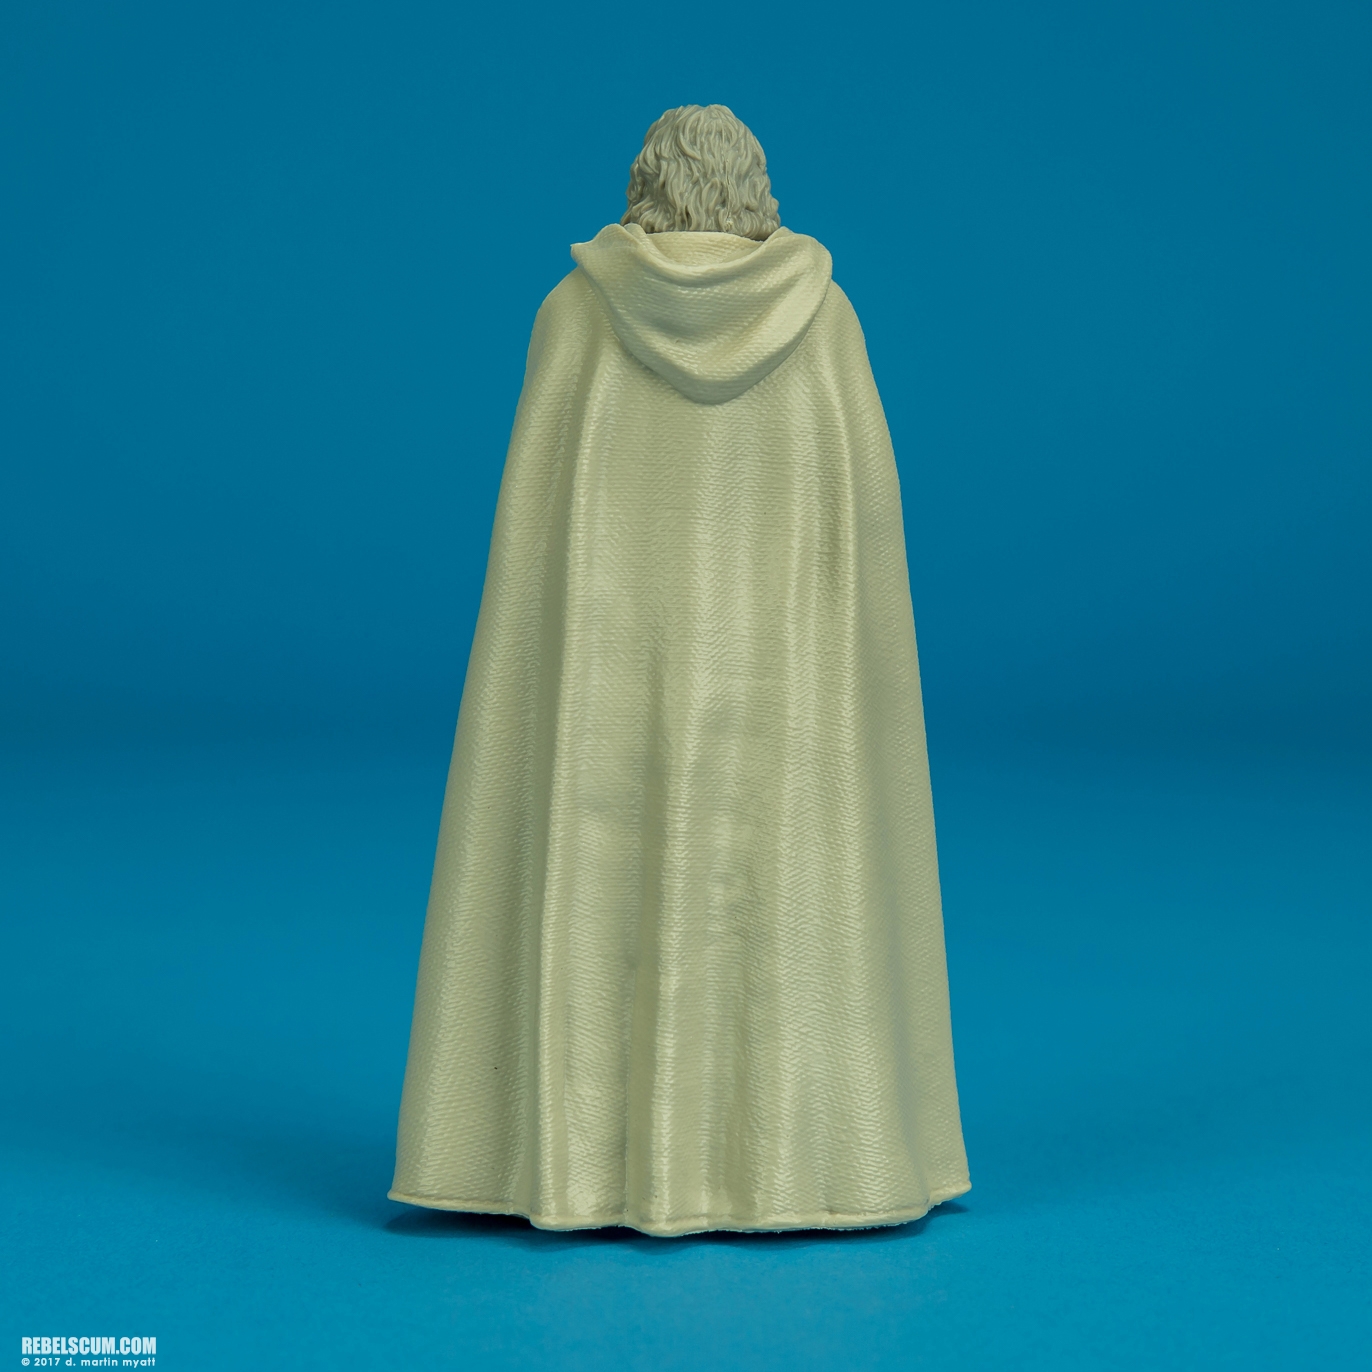 The-Last-Jedi-Star-Wars-Universe-Luke-Skywalker-Hasbro-004.jpg